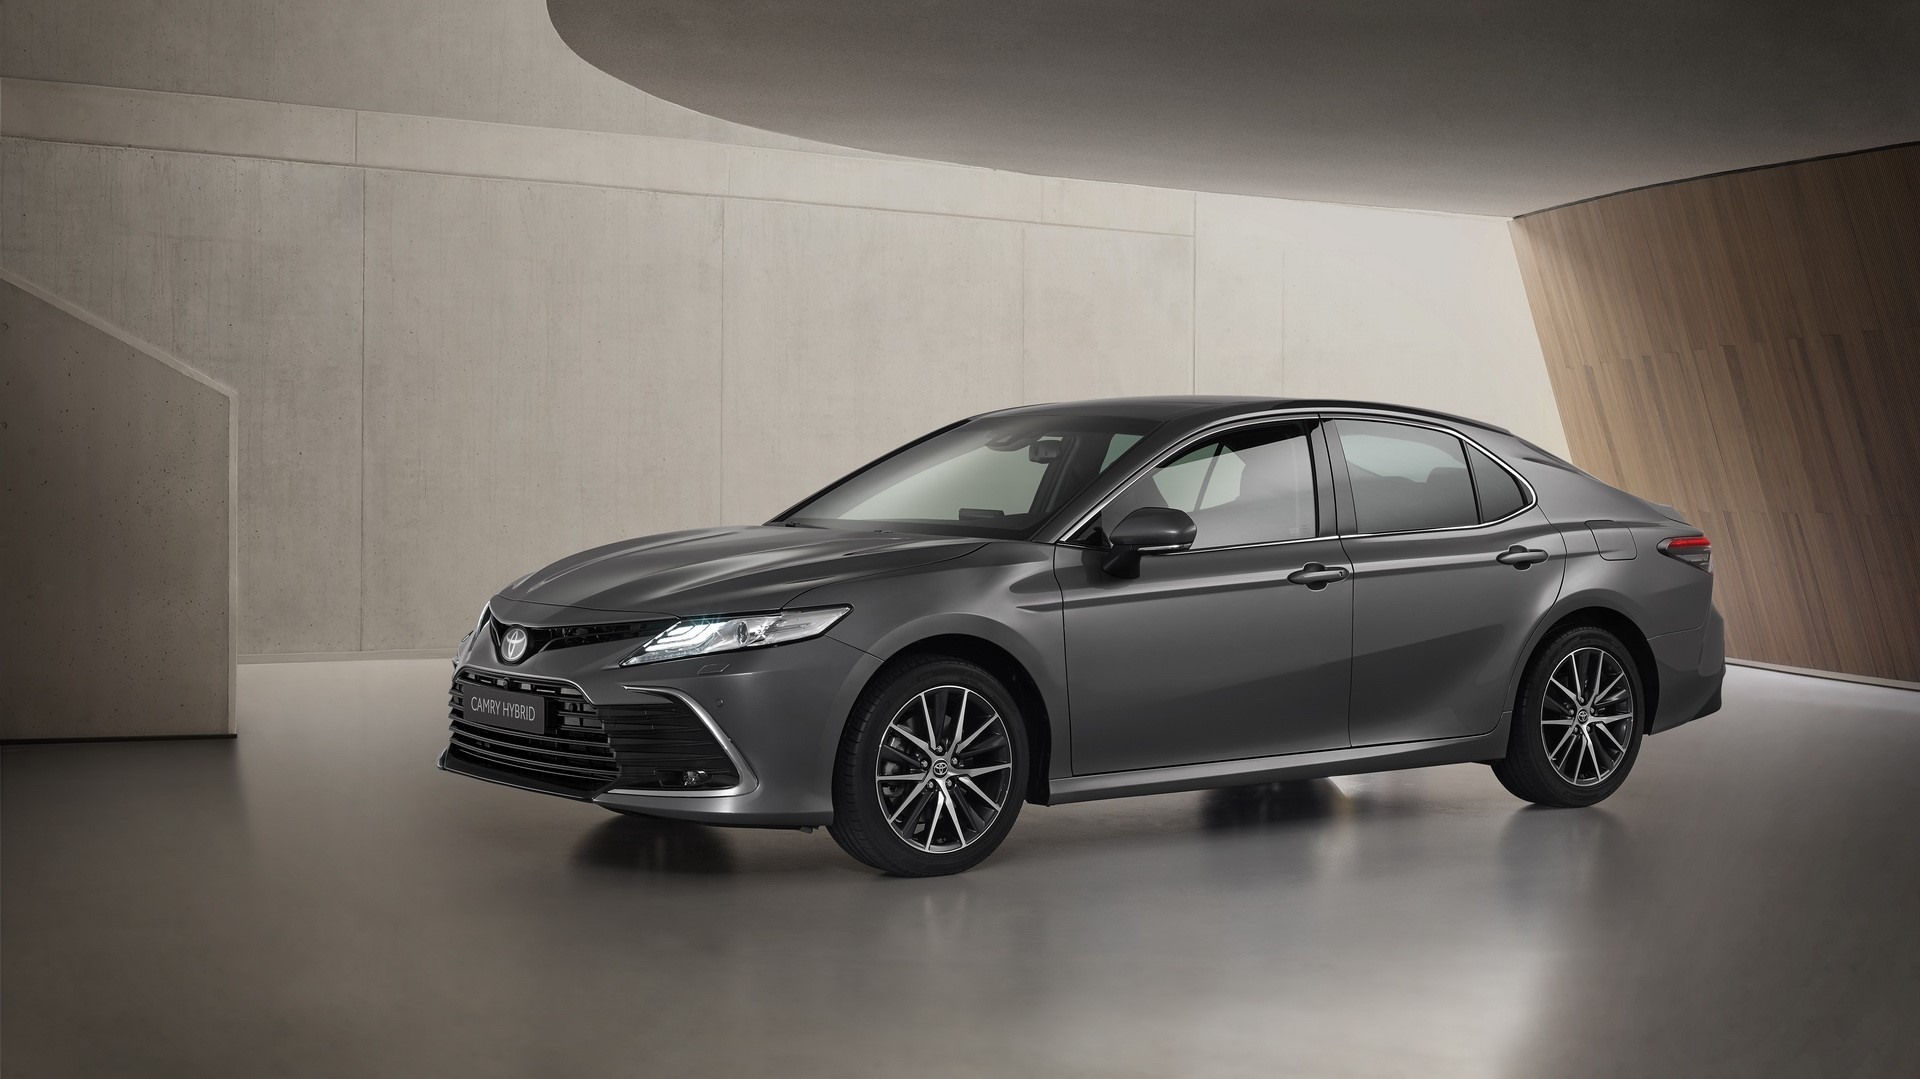 Toyota Camry Hybrid 2021, con nuevos y acertados detalles